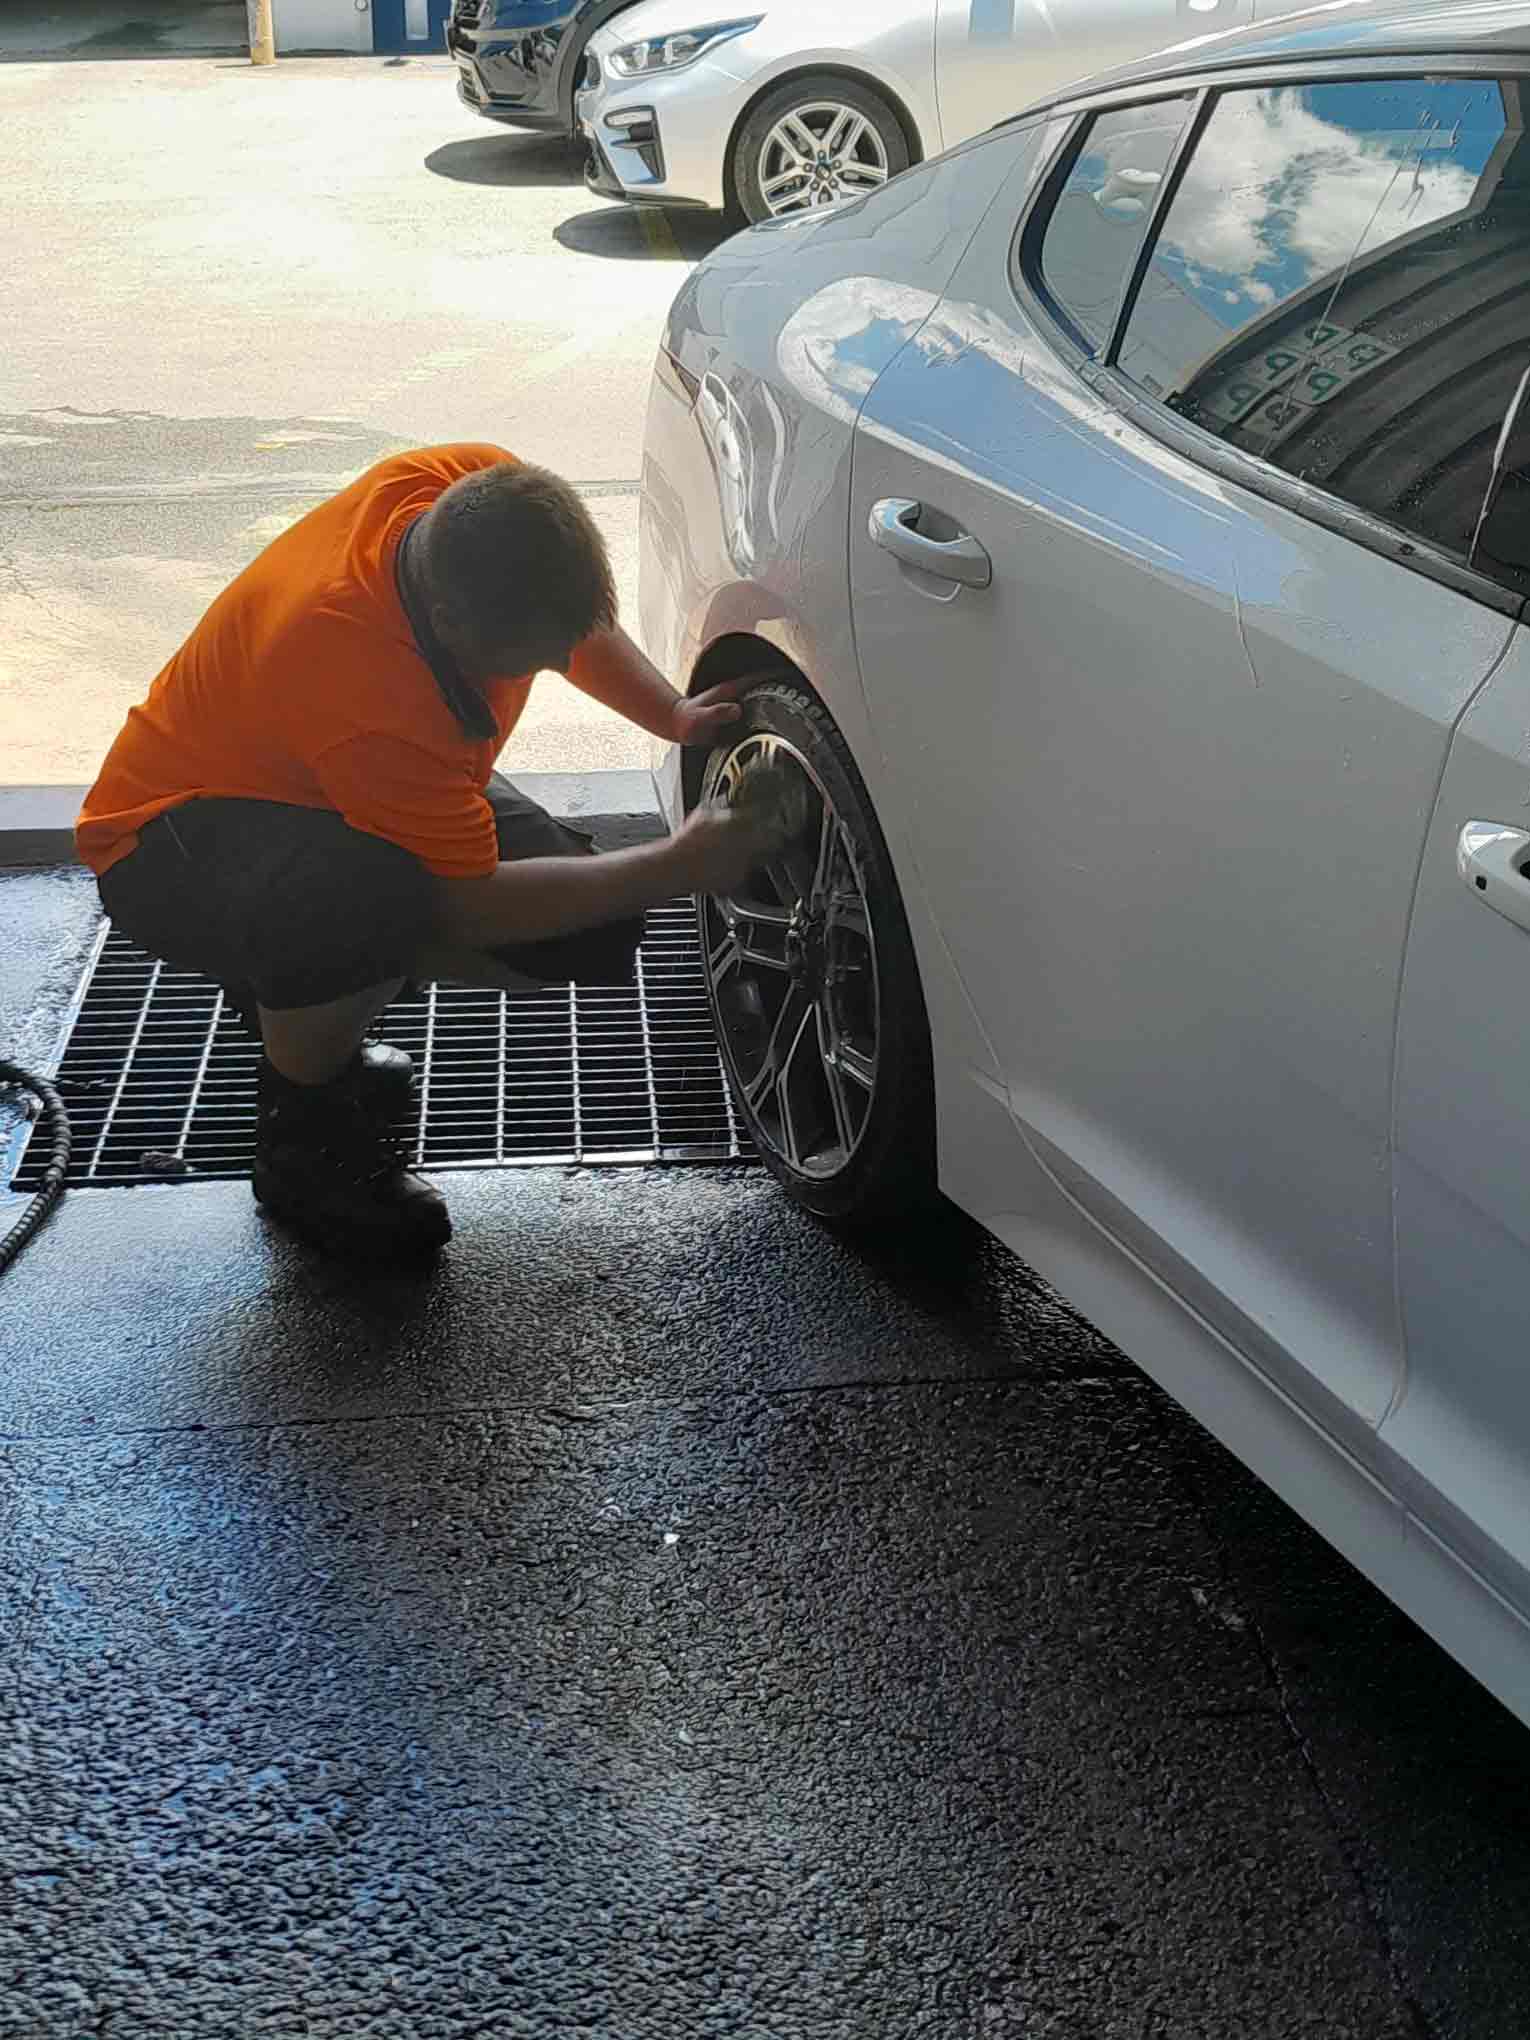 Man in orange high-vis washing wheel rims on car. 